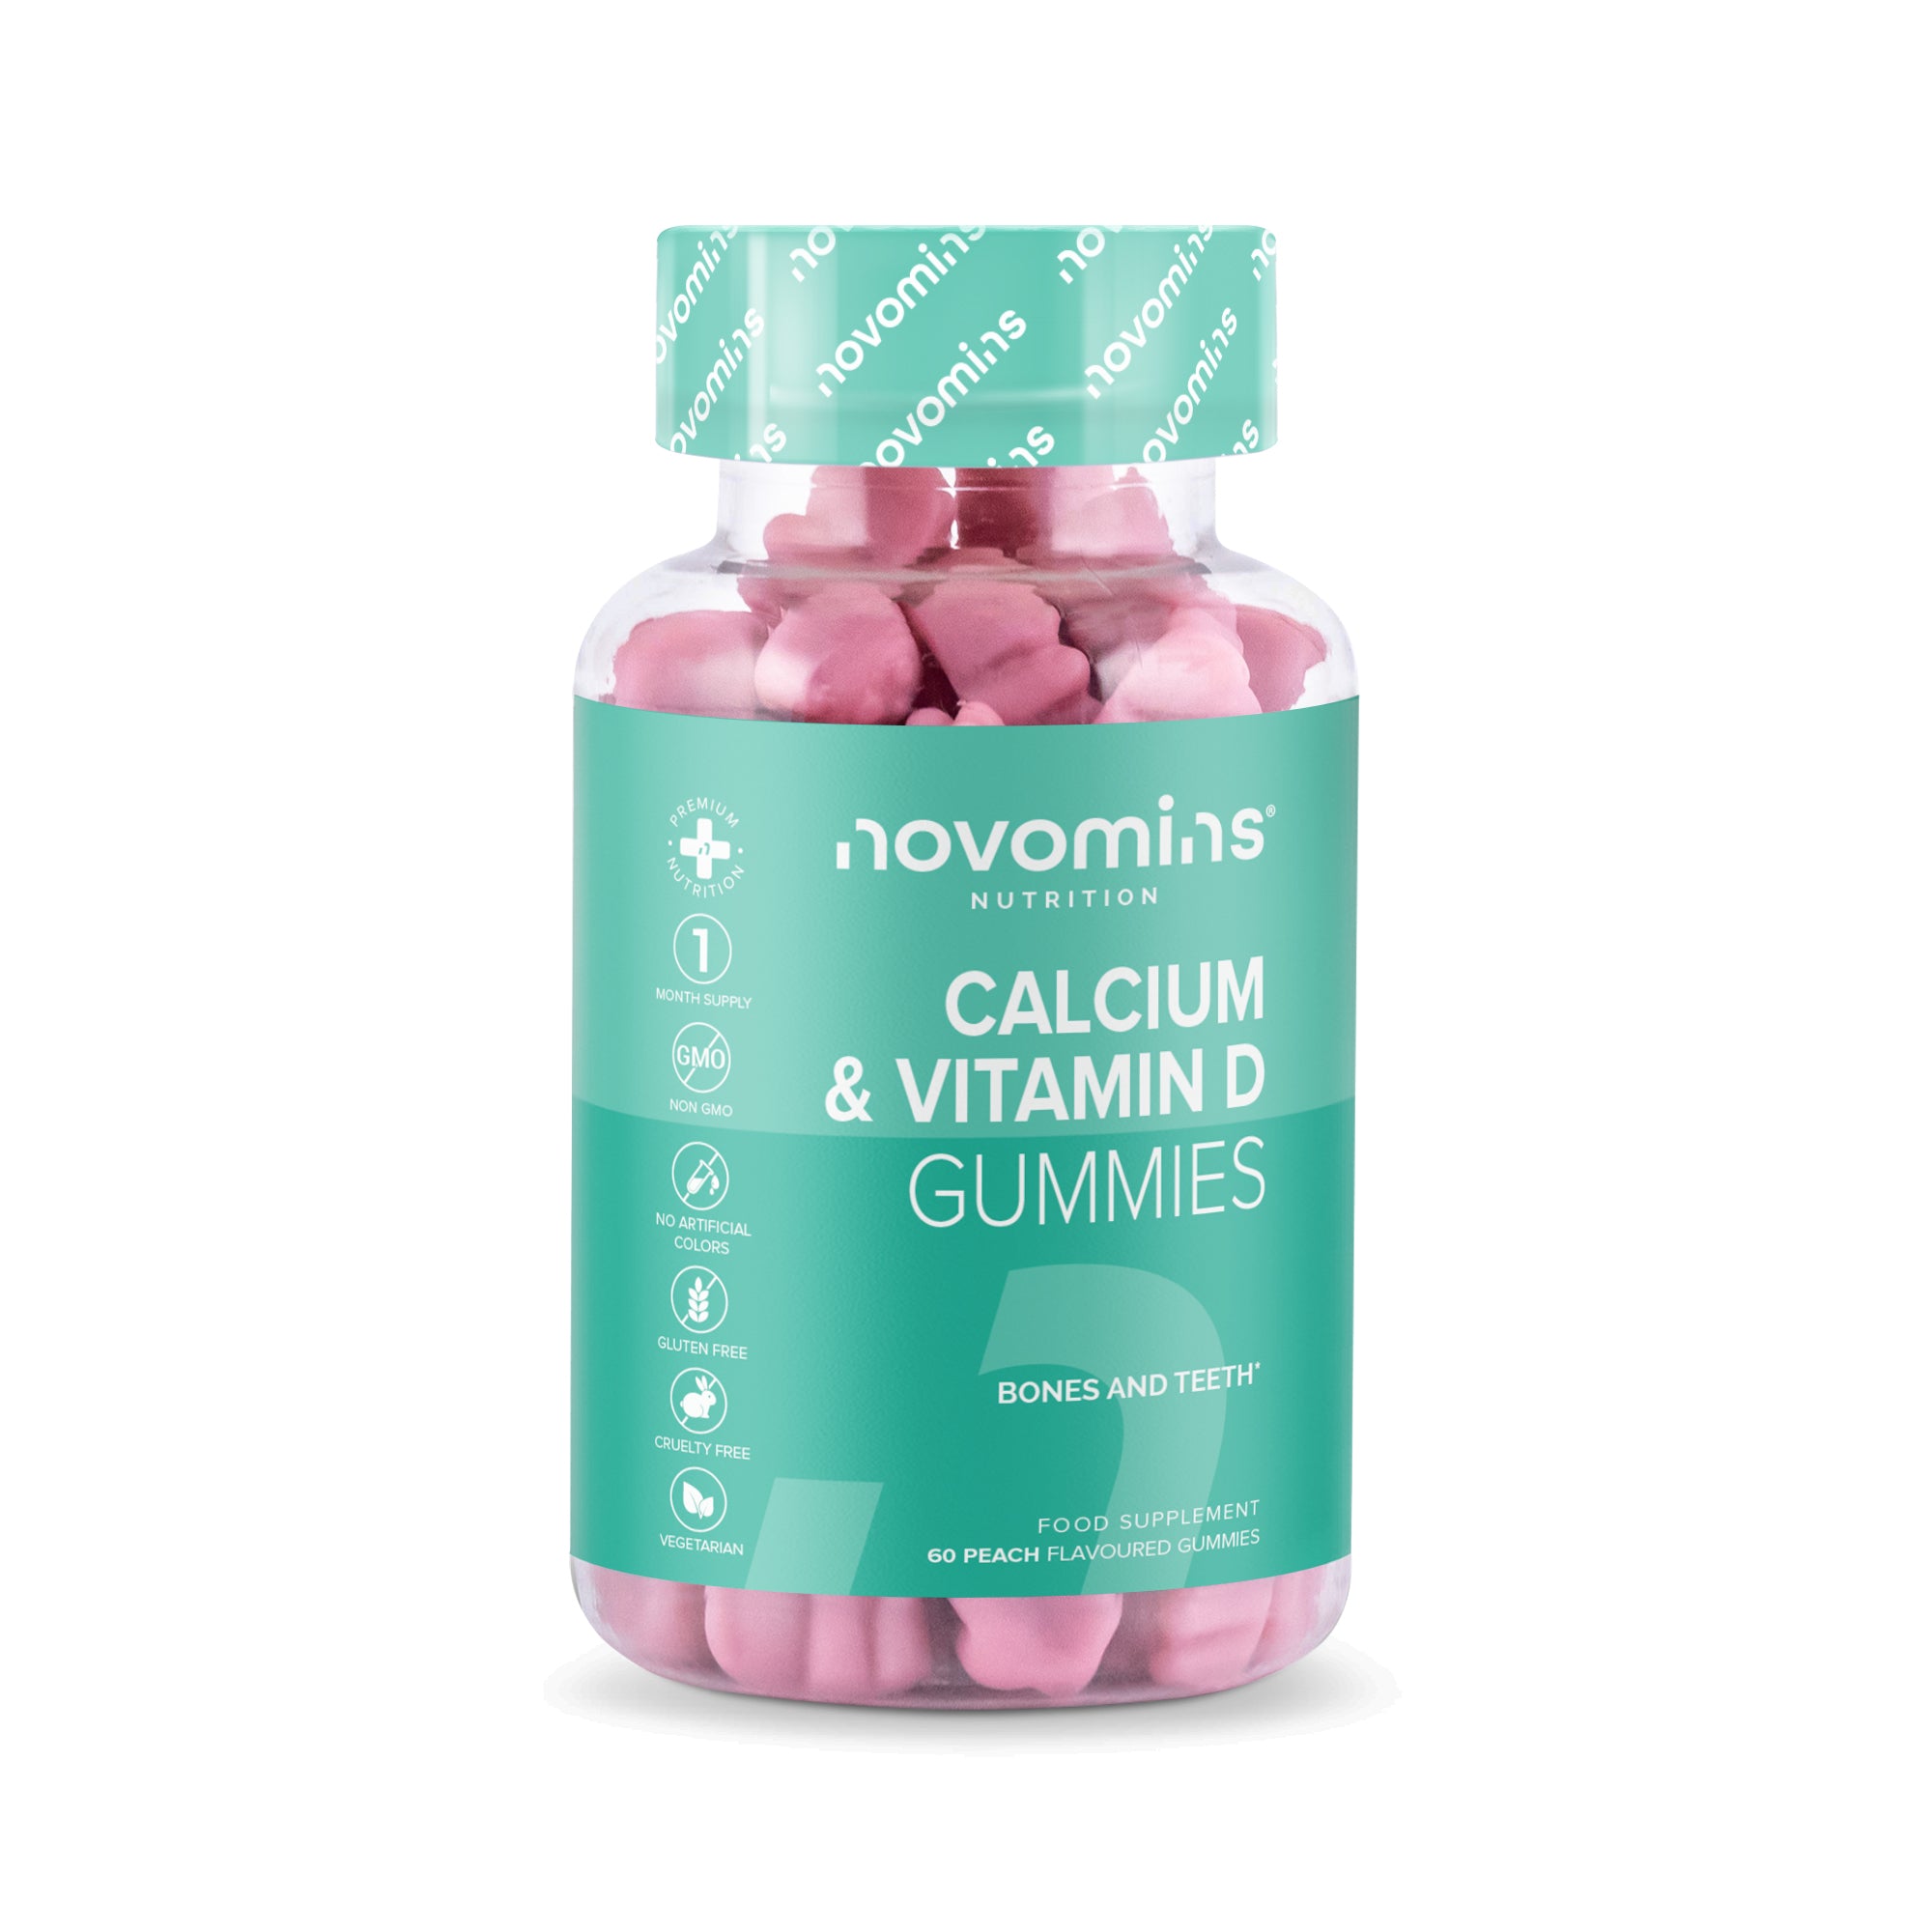 Novomins Calcium and Vitamin D Gummies